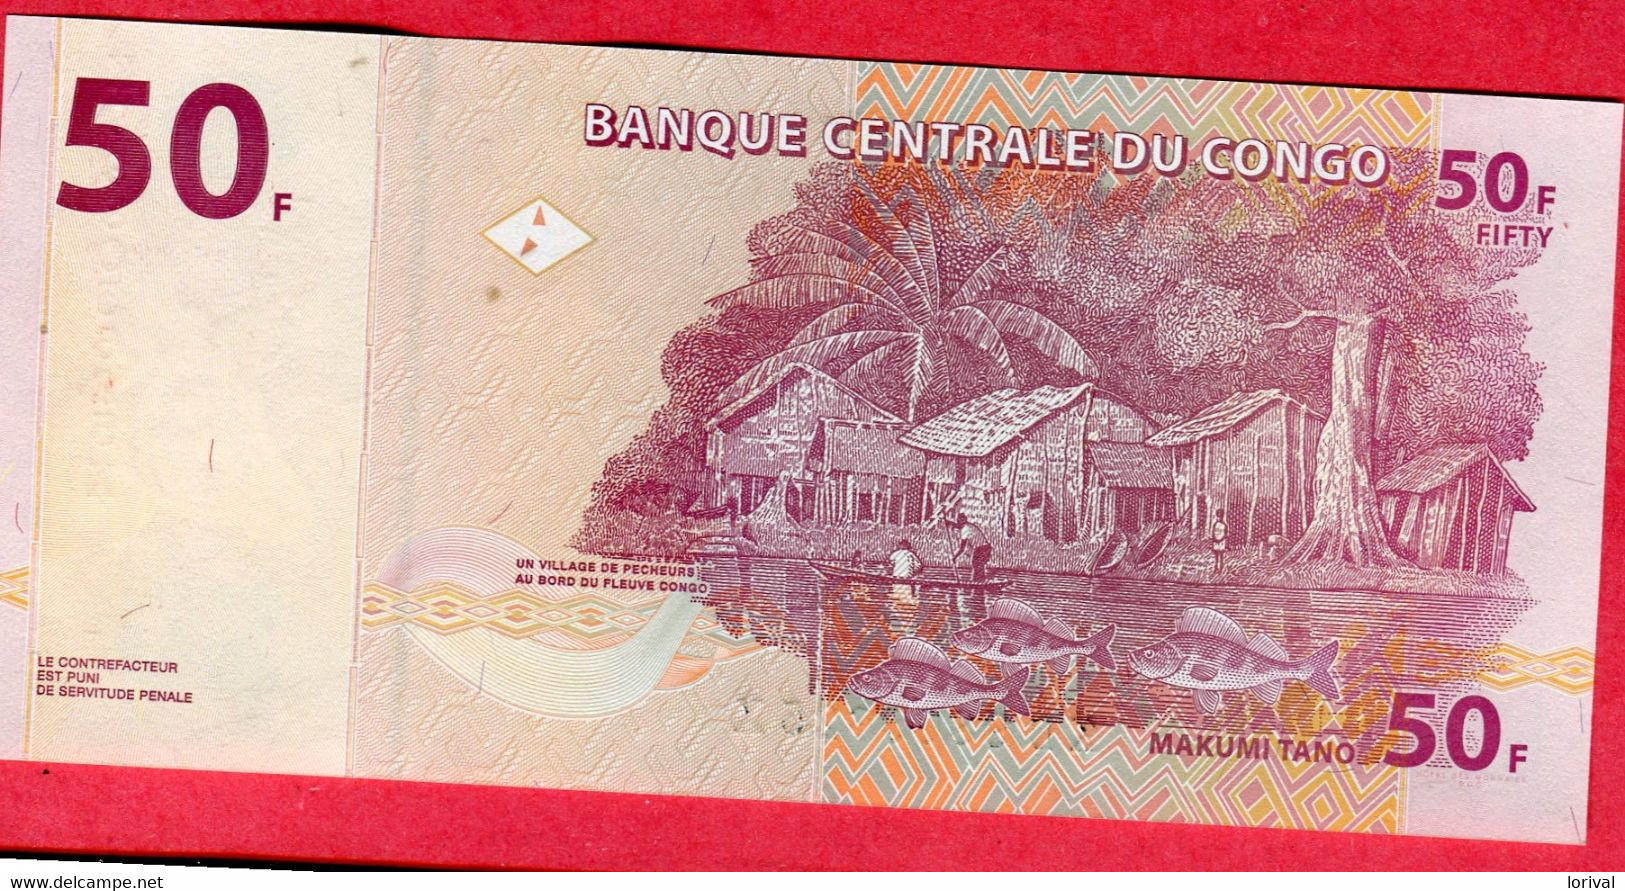 20 Francs 2013 Neuf 3 Euros - Republic Of Congo (Congo-Brazzaville)